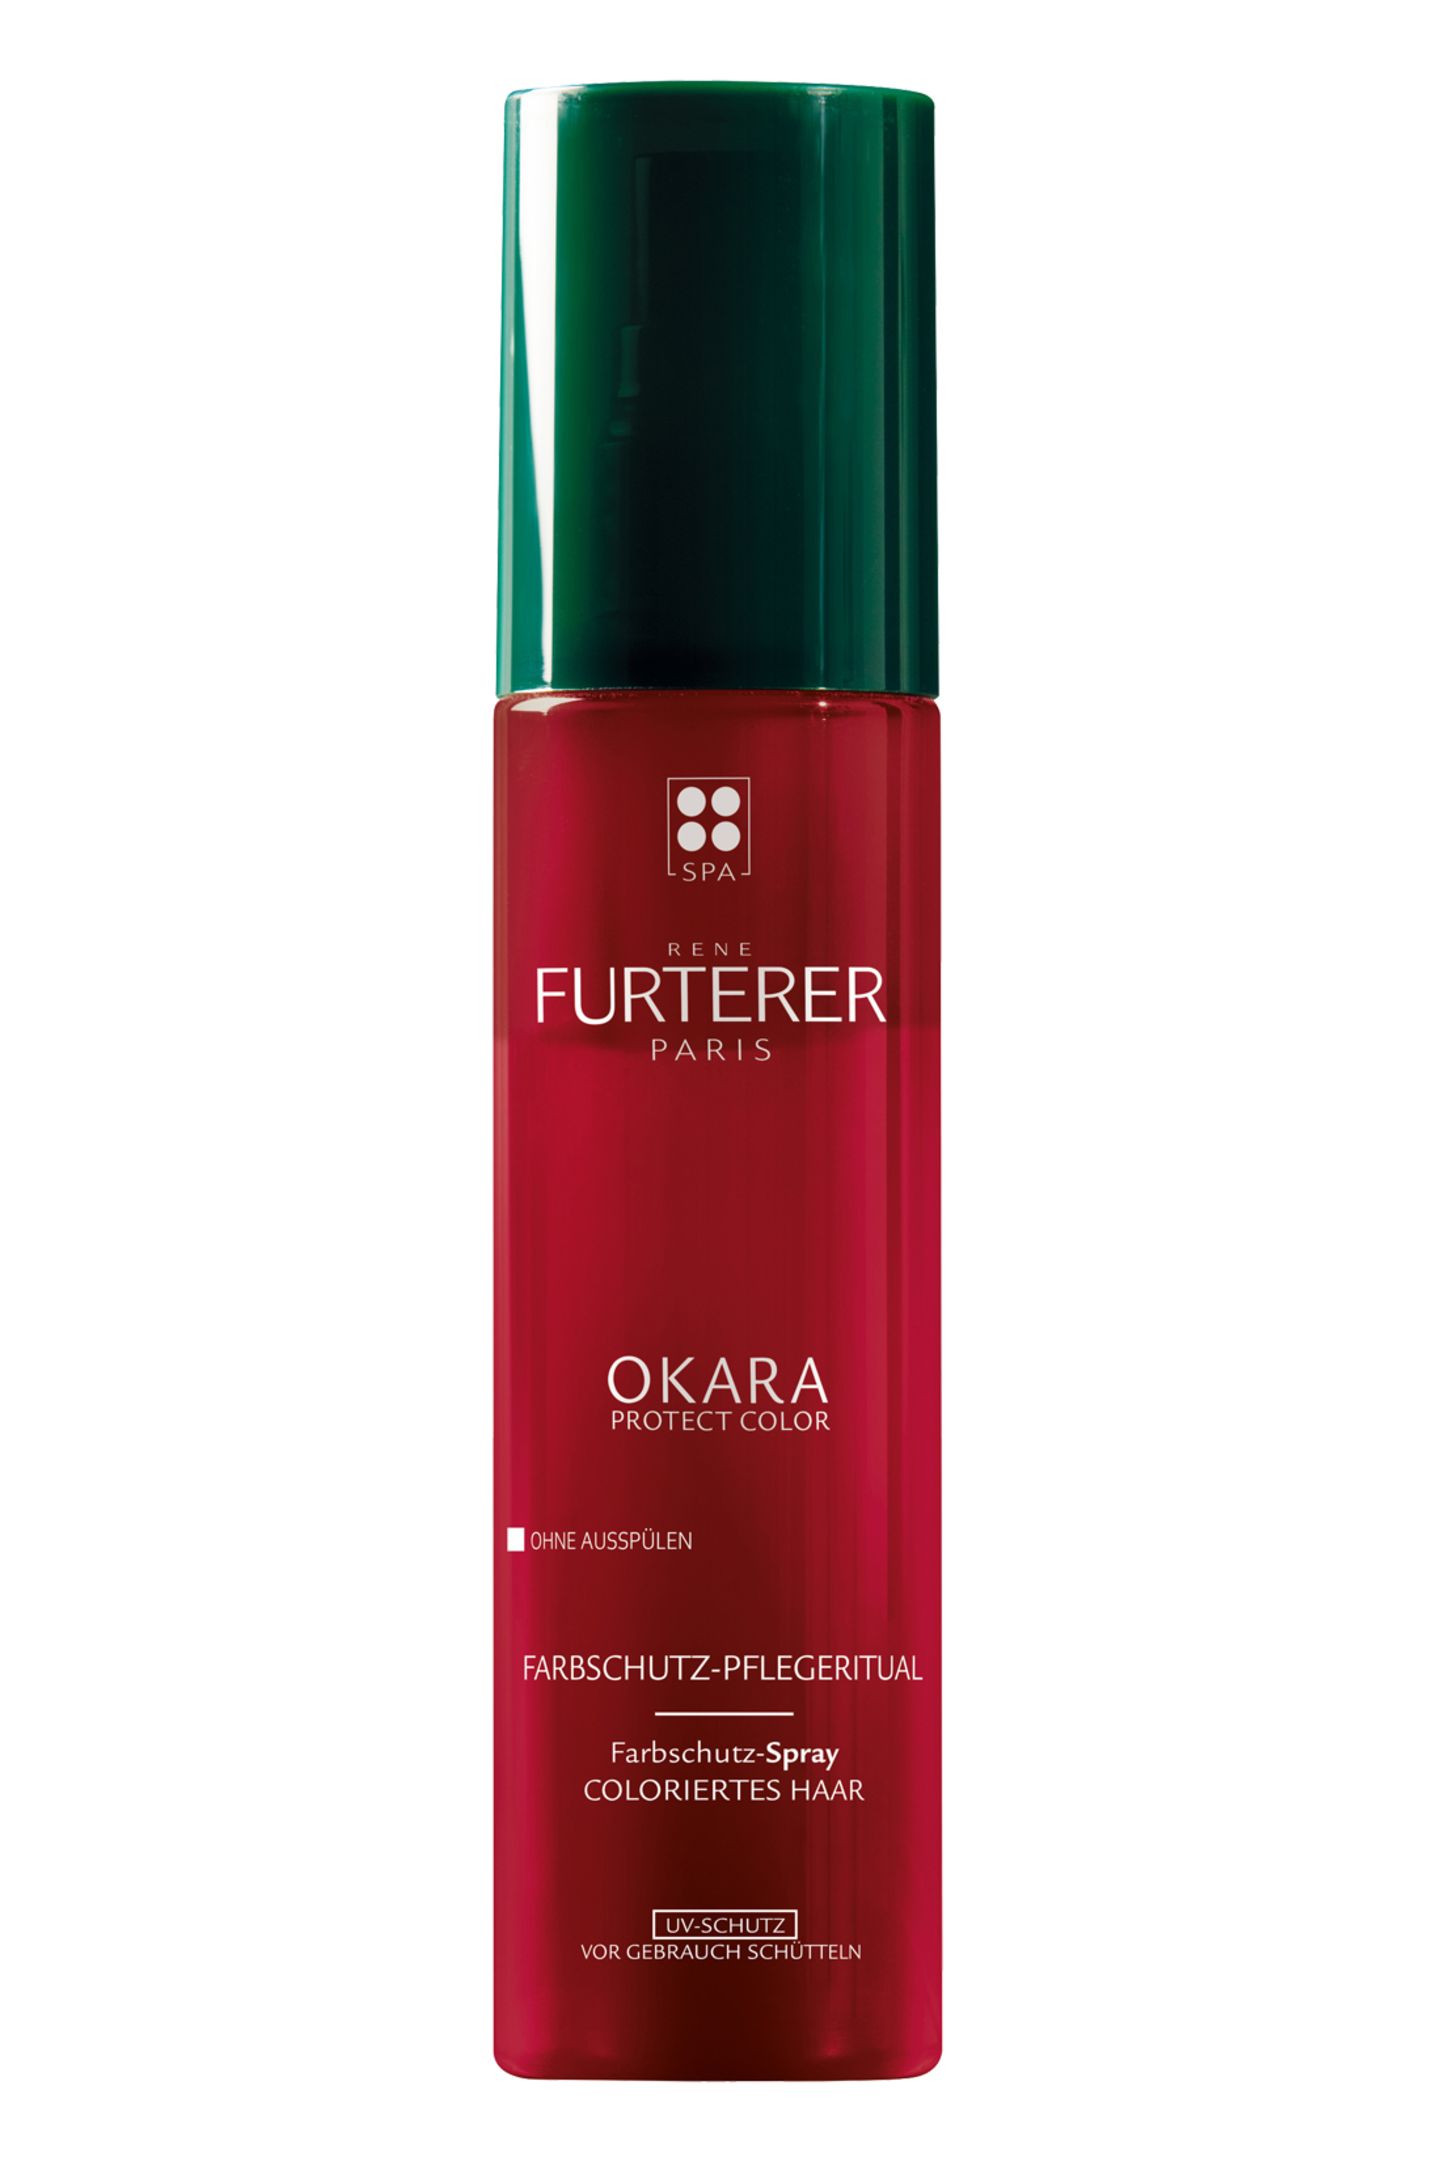 Leave-in Farbspray mit UV-Schutz: "Okara Protect Color Farbschutz-Spray" von René Furterer, 150 ml, ca. 16 Euro